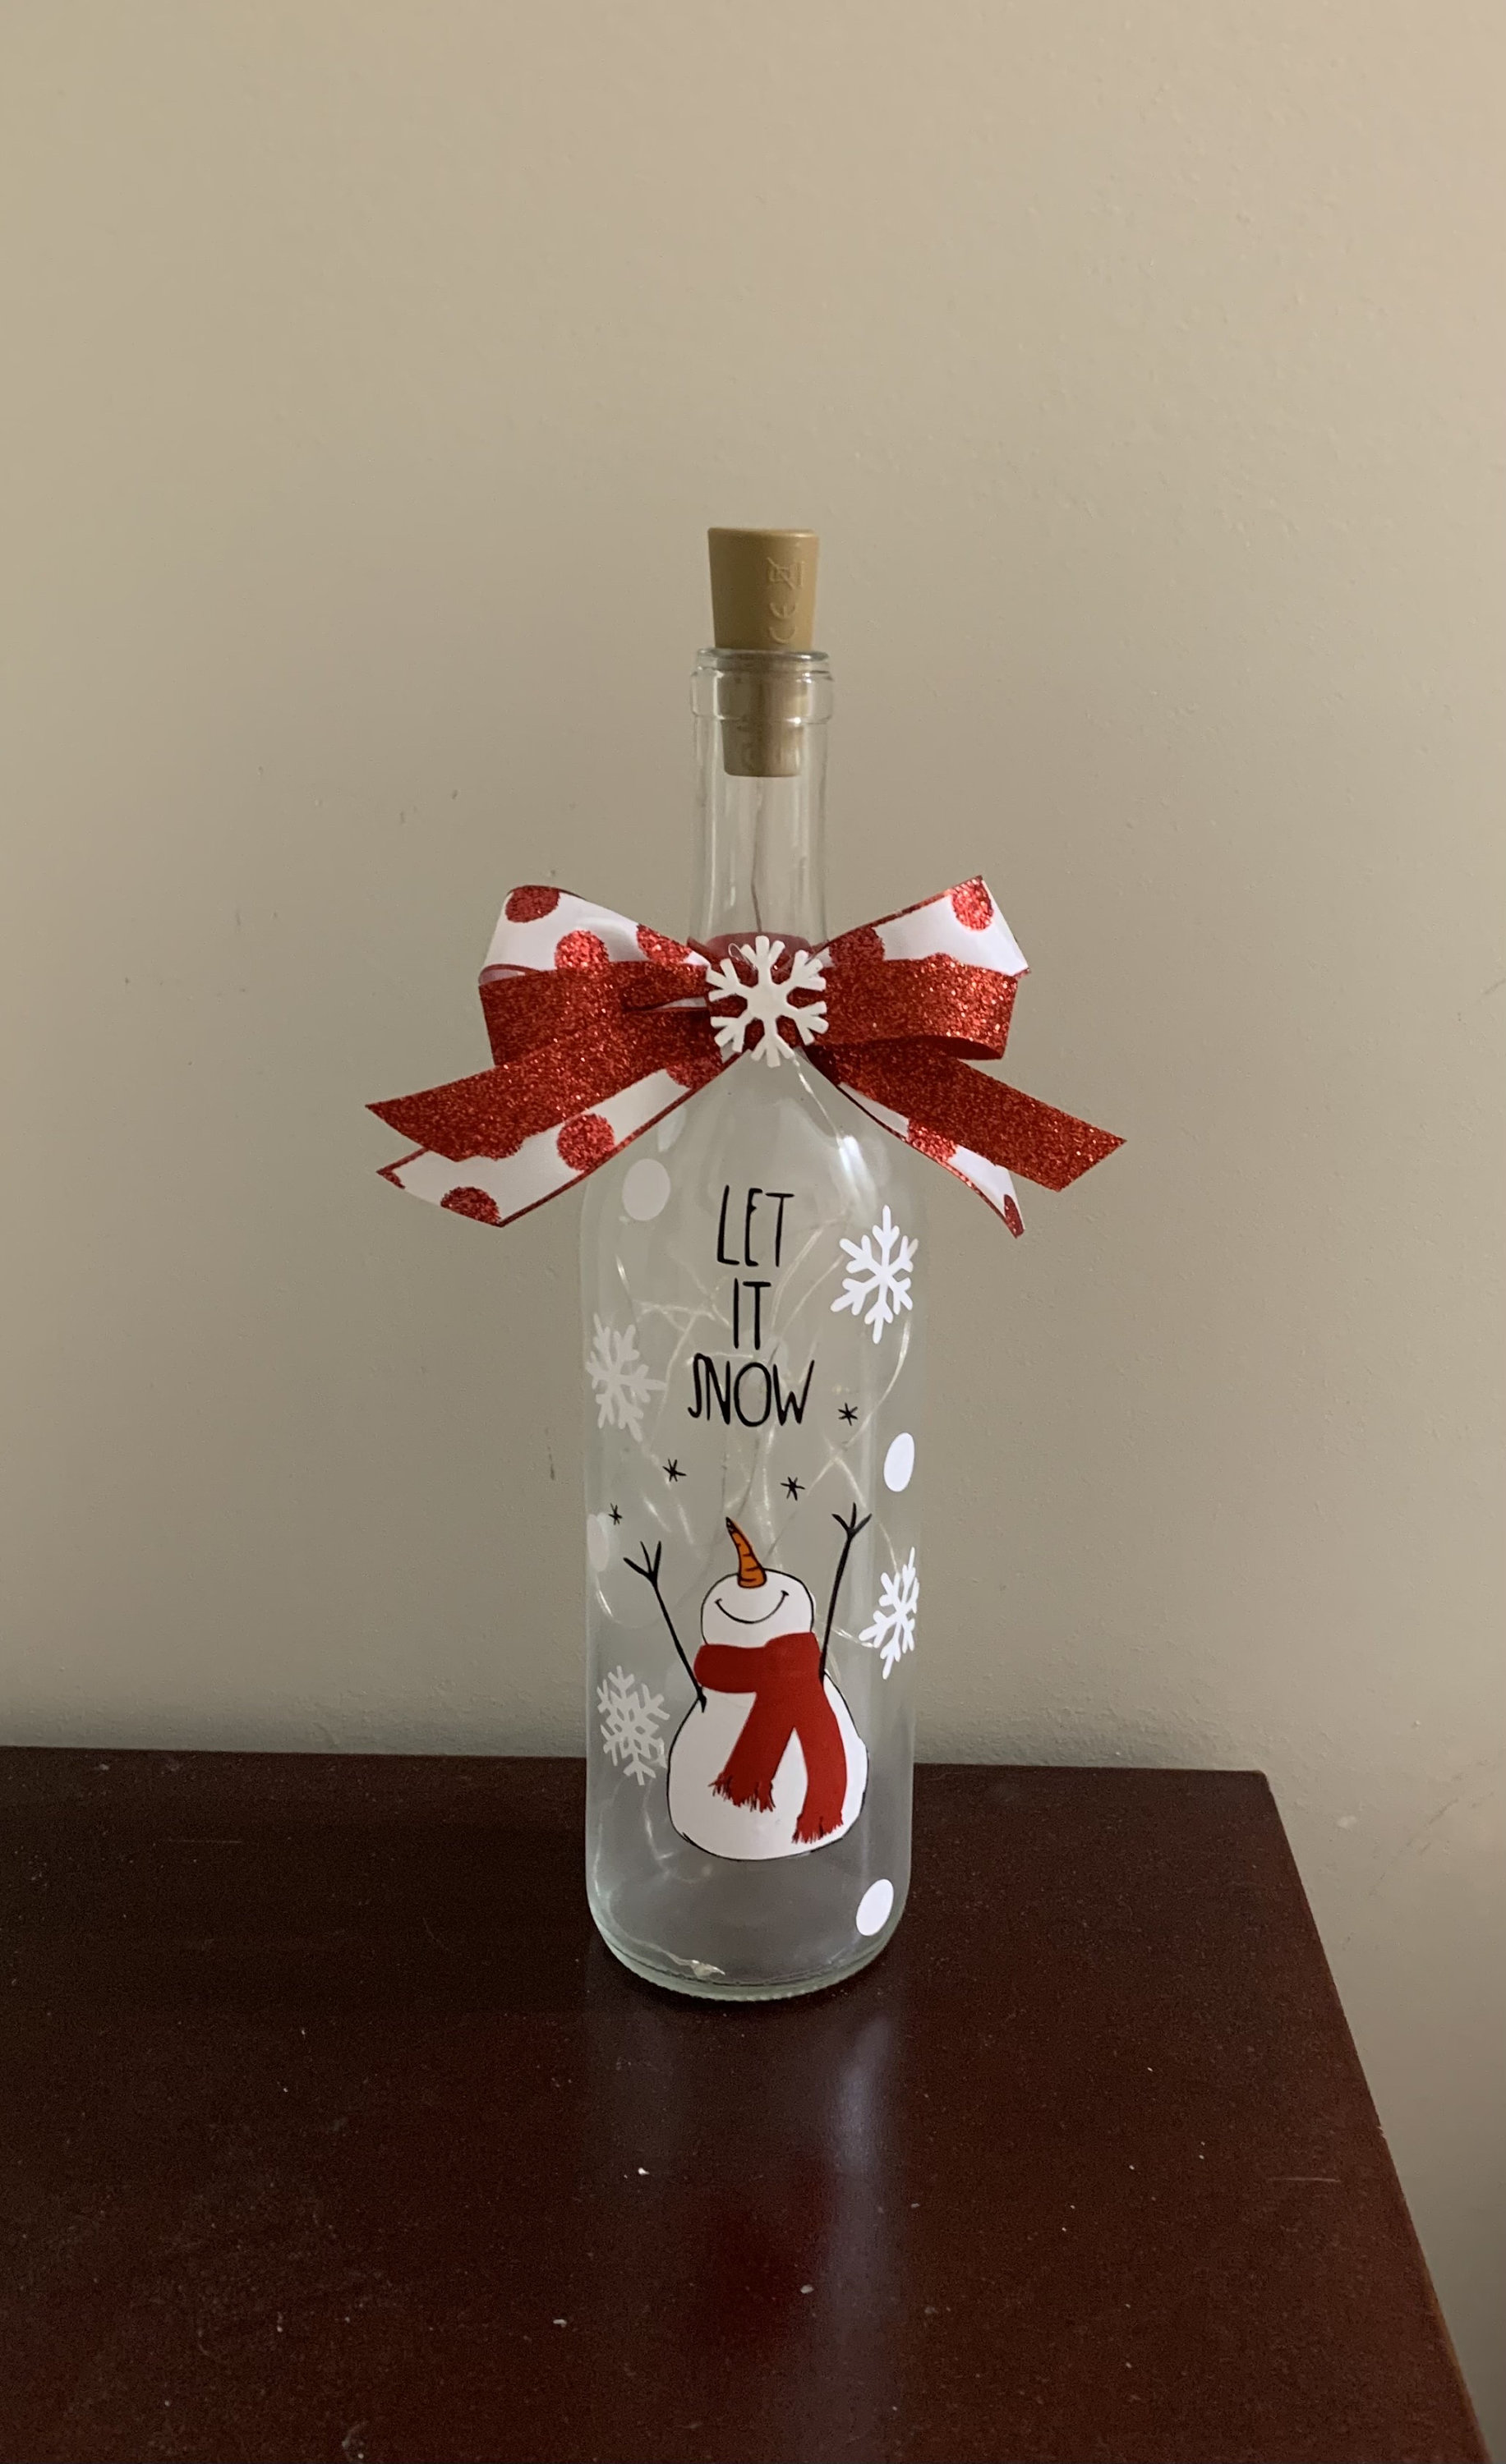 Lighted Wine Bottle With Swirling Glitter Christmas Cheer Design Snow   Lighted wine bottles, Christmas wine bottles, Wine bottle diy crafts